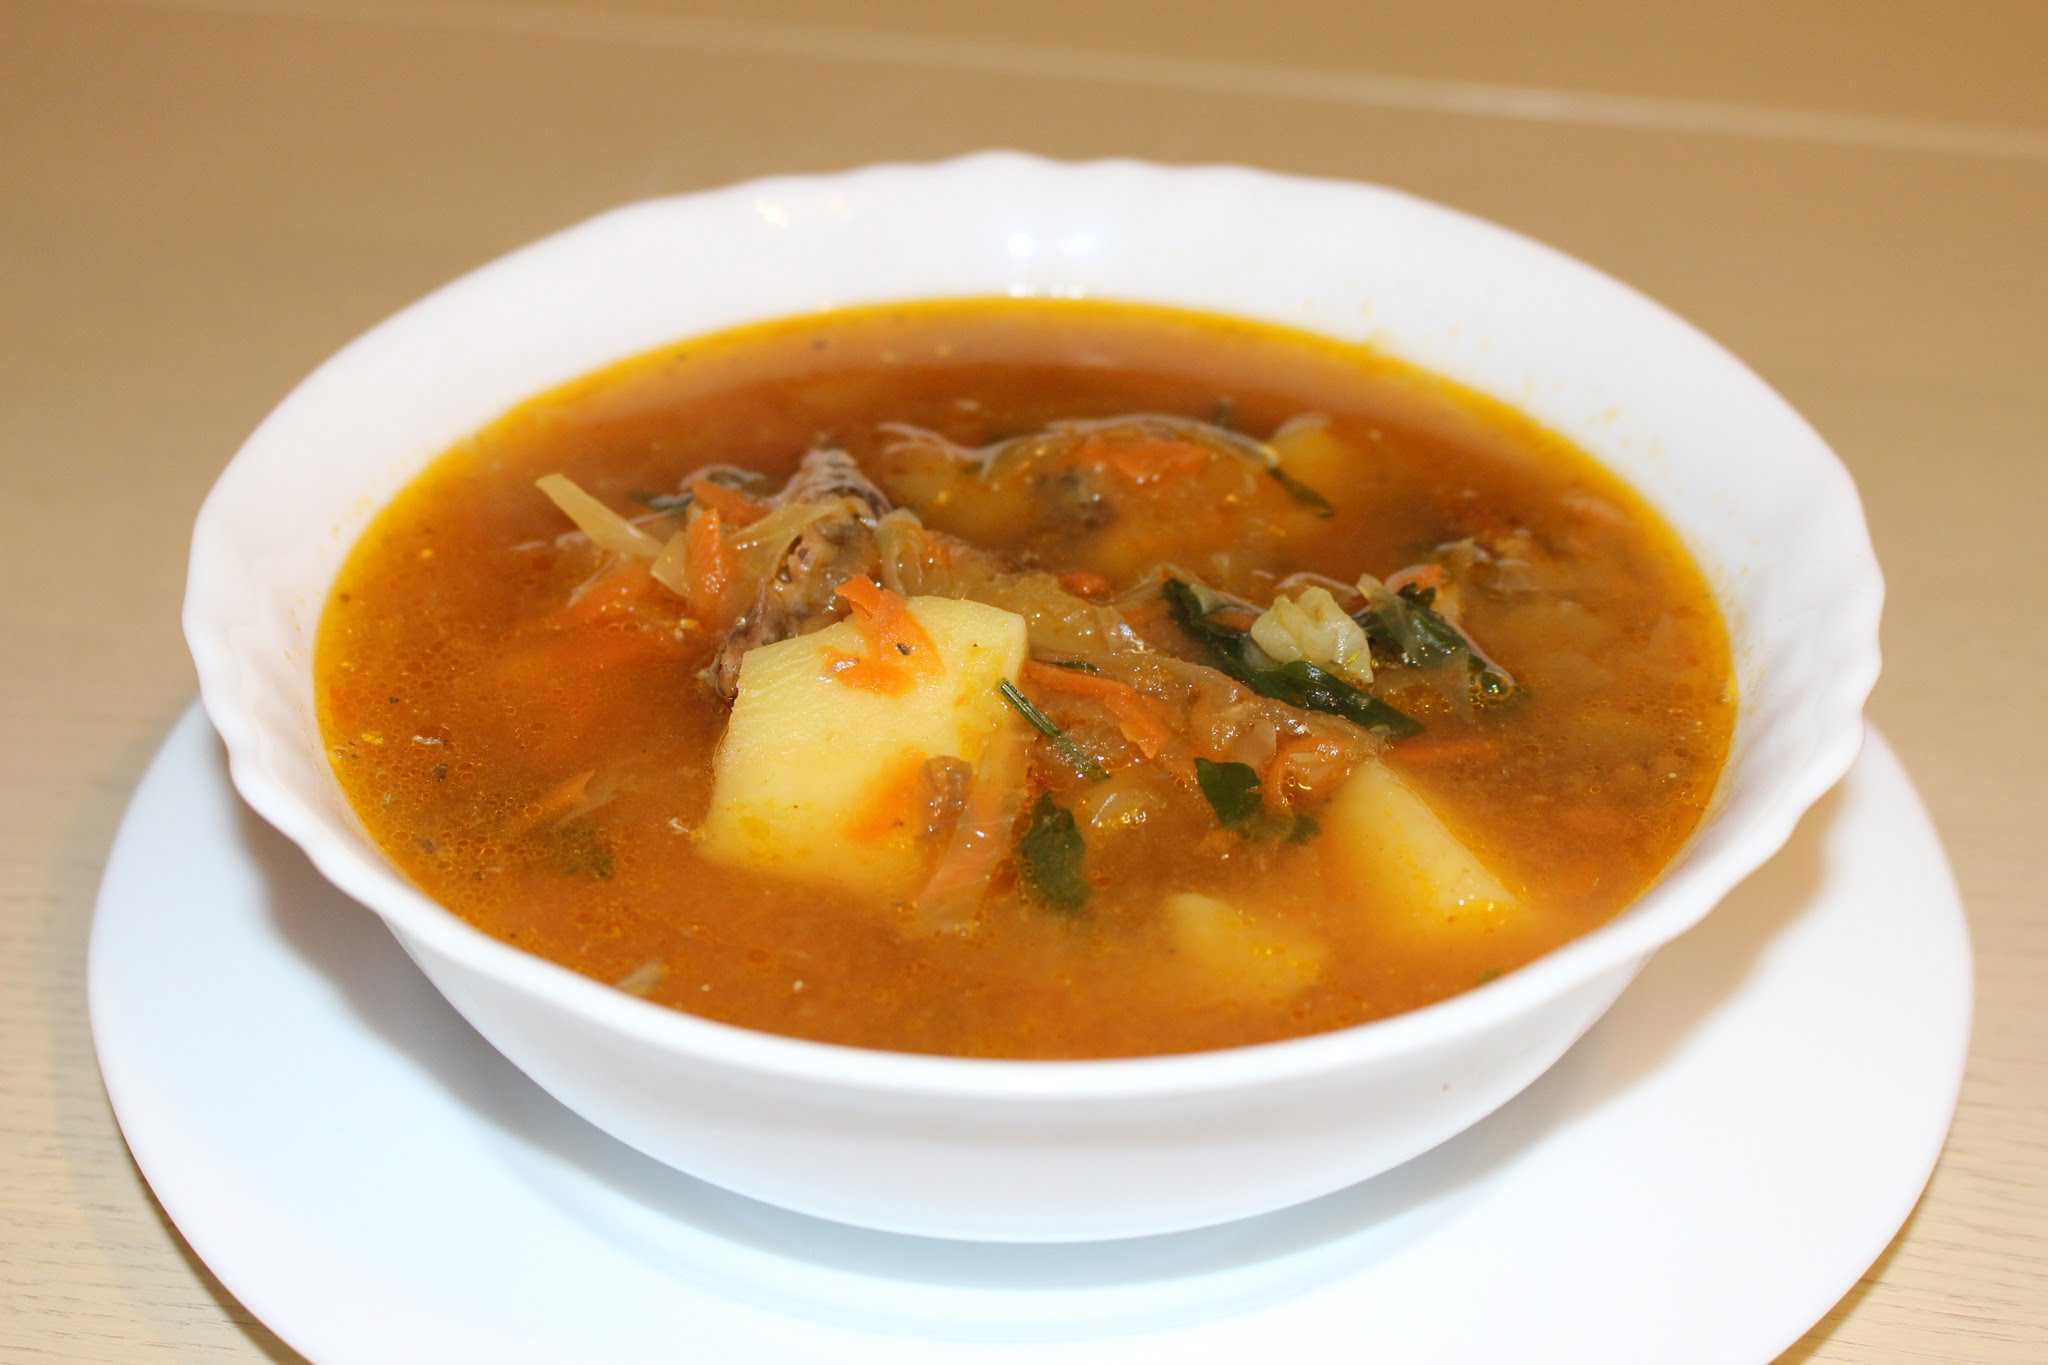 Суп килька в томатном соусе рецепт из консервы с фото пошагово